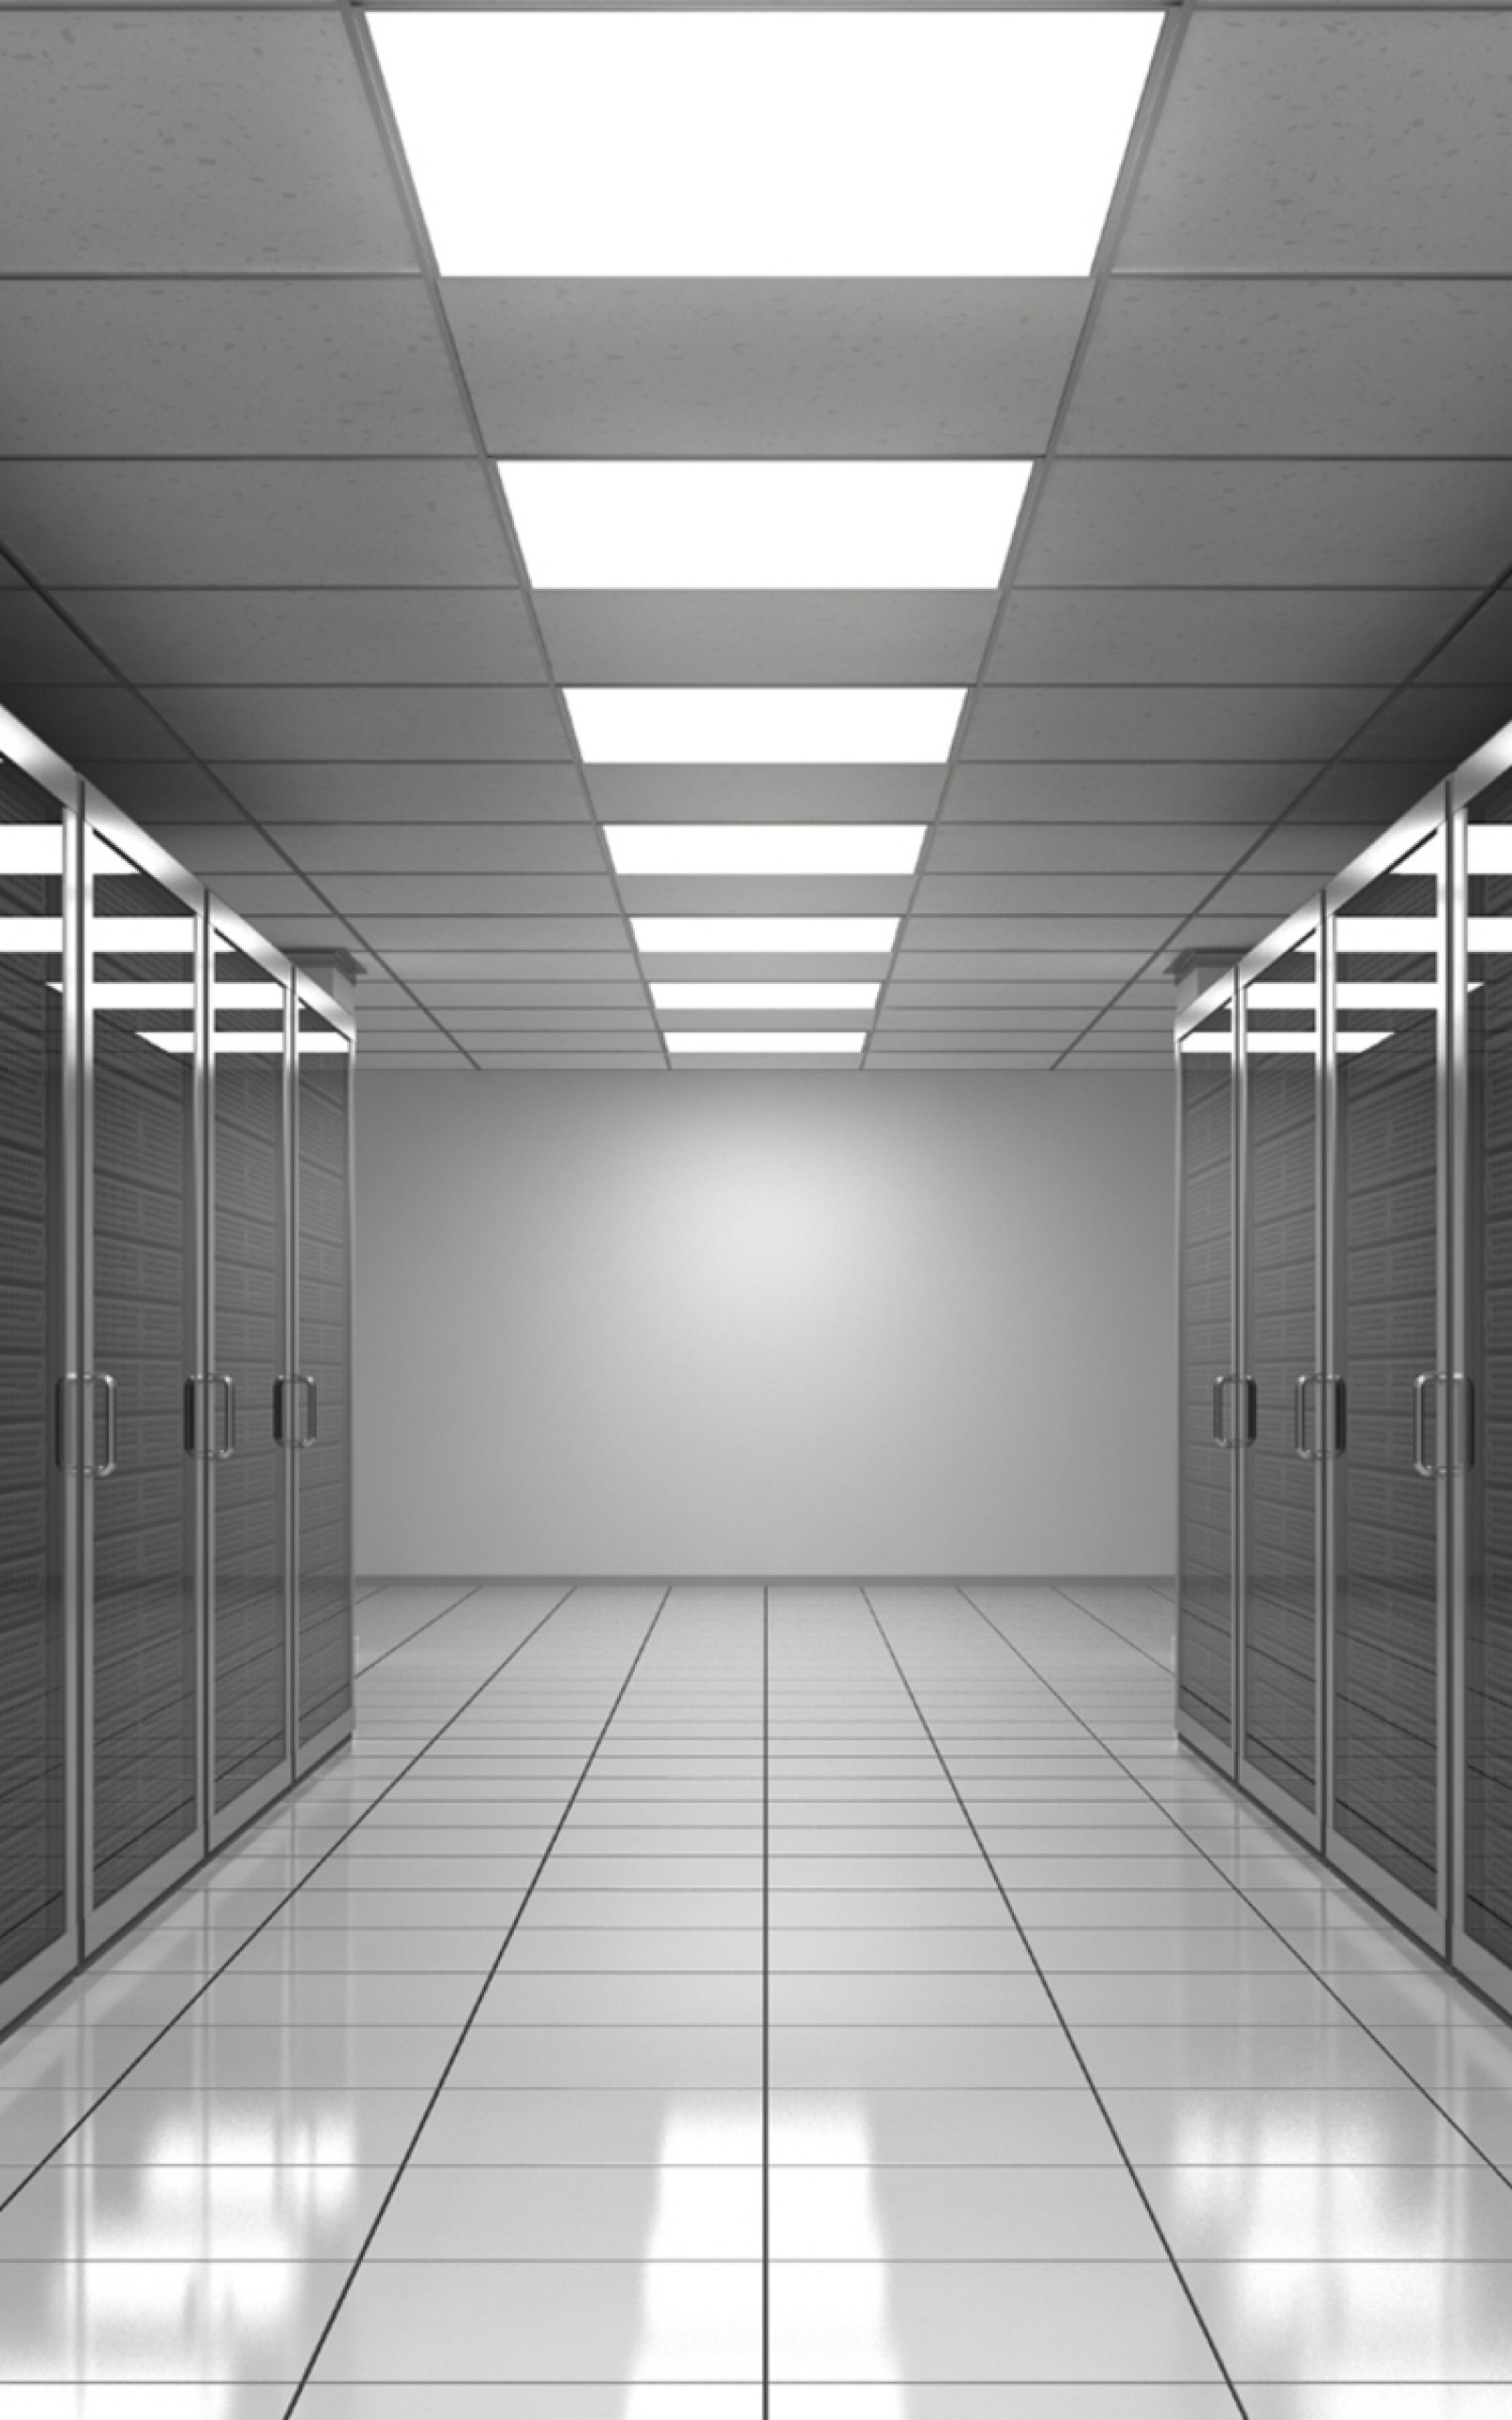 Server Room, Data Center - World's Biggest Server Room - HD Wallpaper 